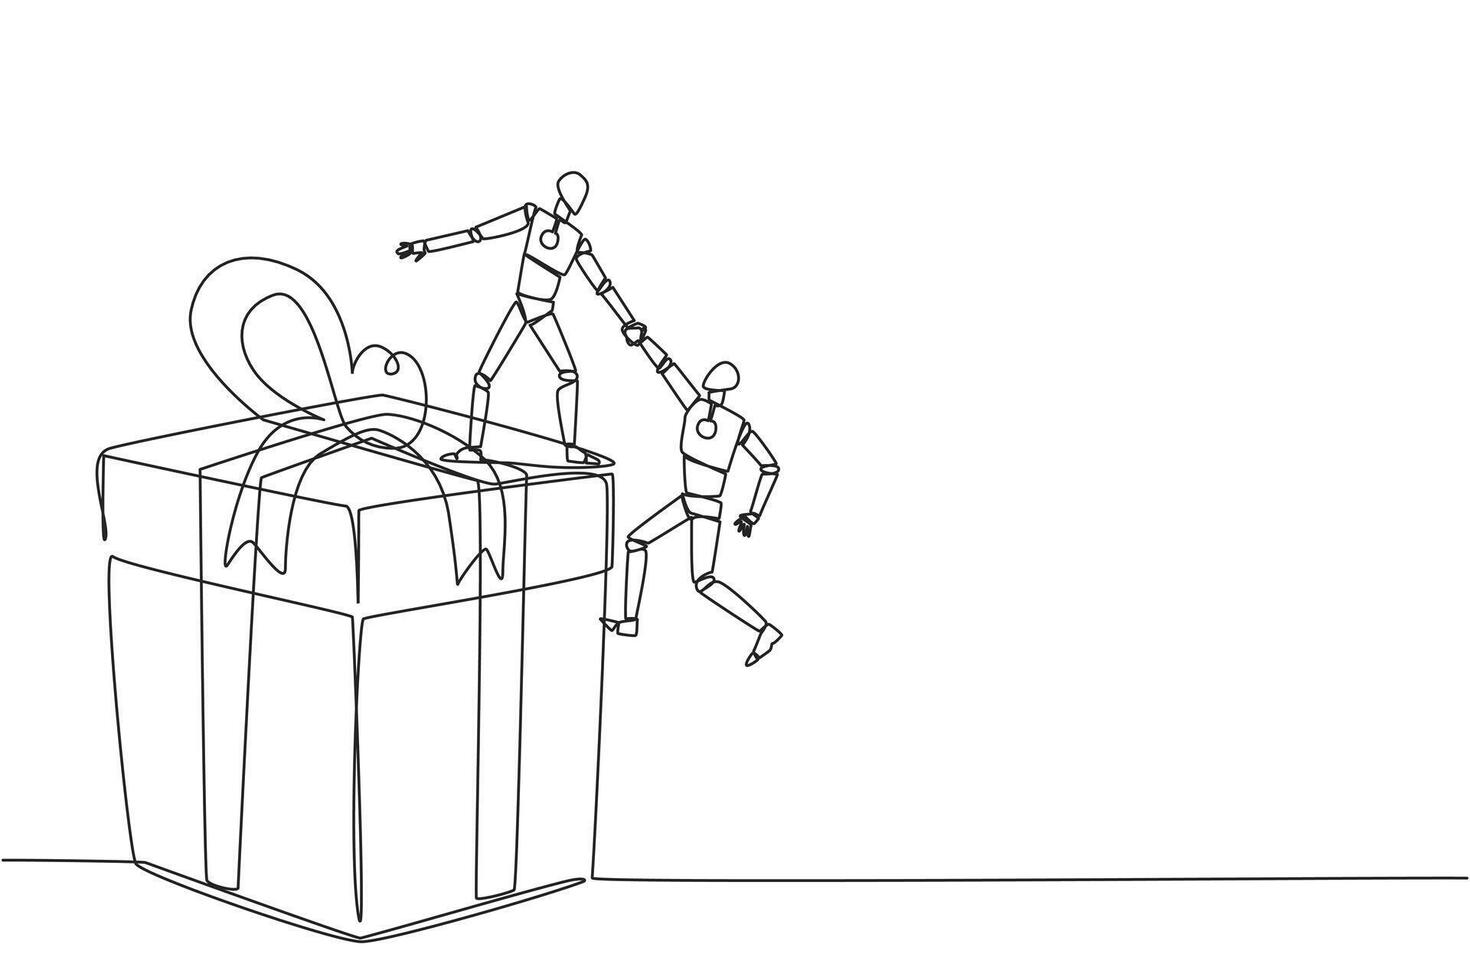 single doorlopend lijn tekening slim robot helpt collega beklimmen de groot geschenk doos. geïntegreerde samenspel naar bereiken hoogste niveau voor beloningen. helpen elk ander. een lijn ontwerp illustratie vector